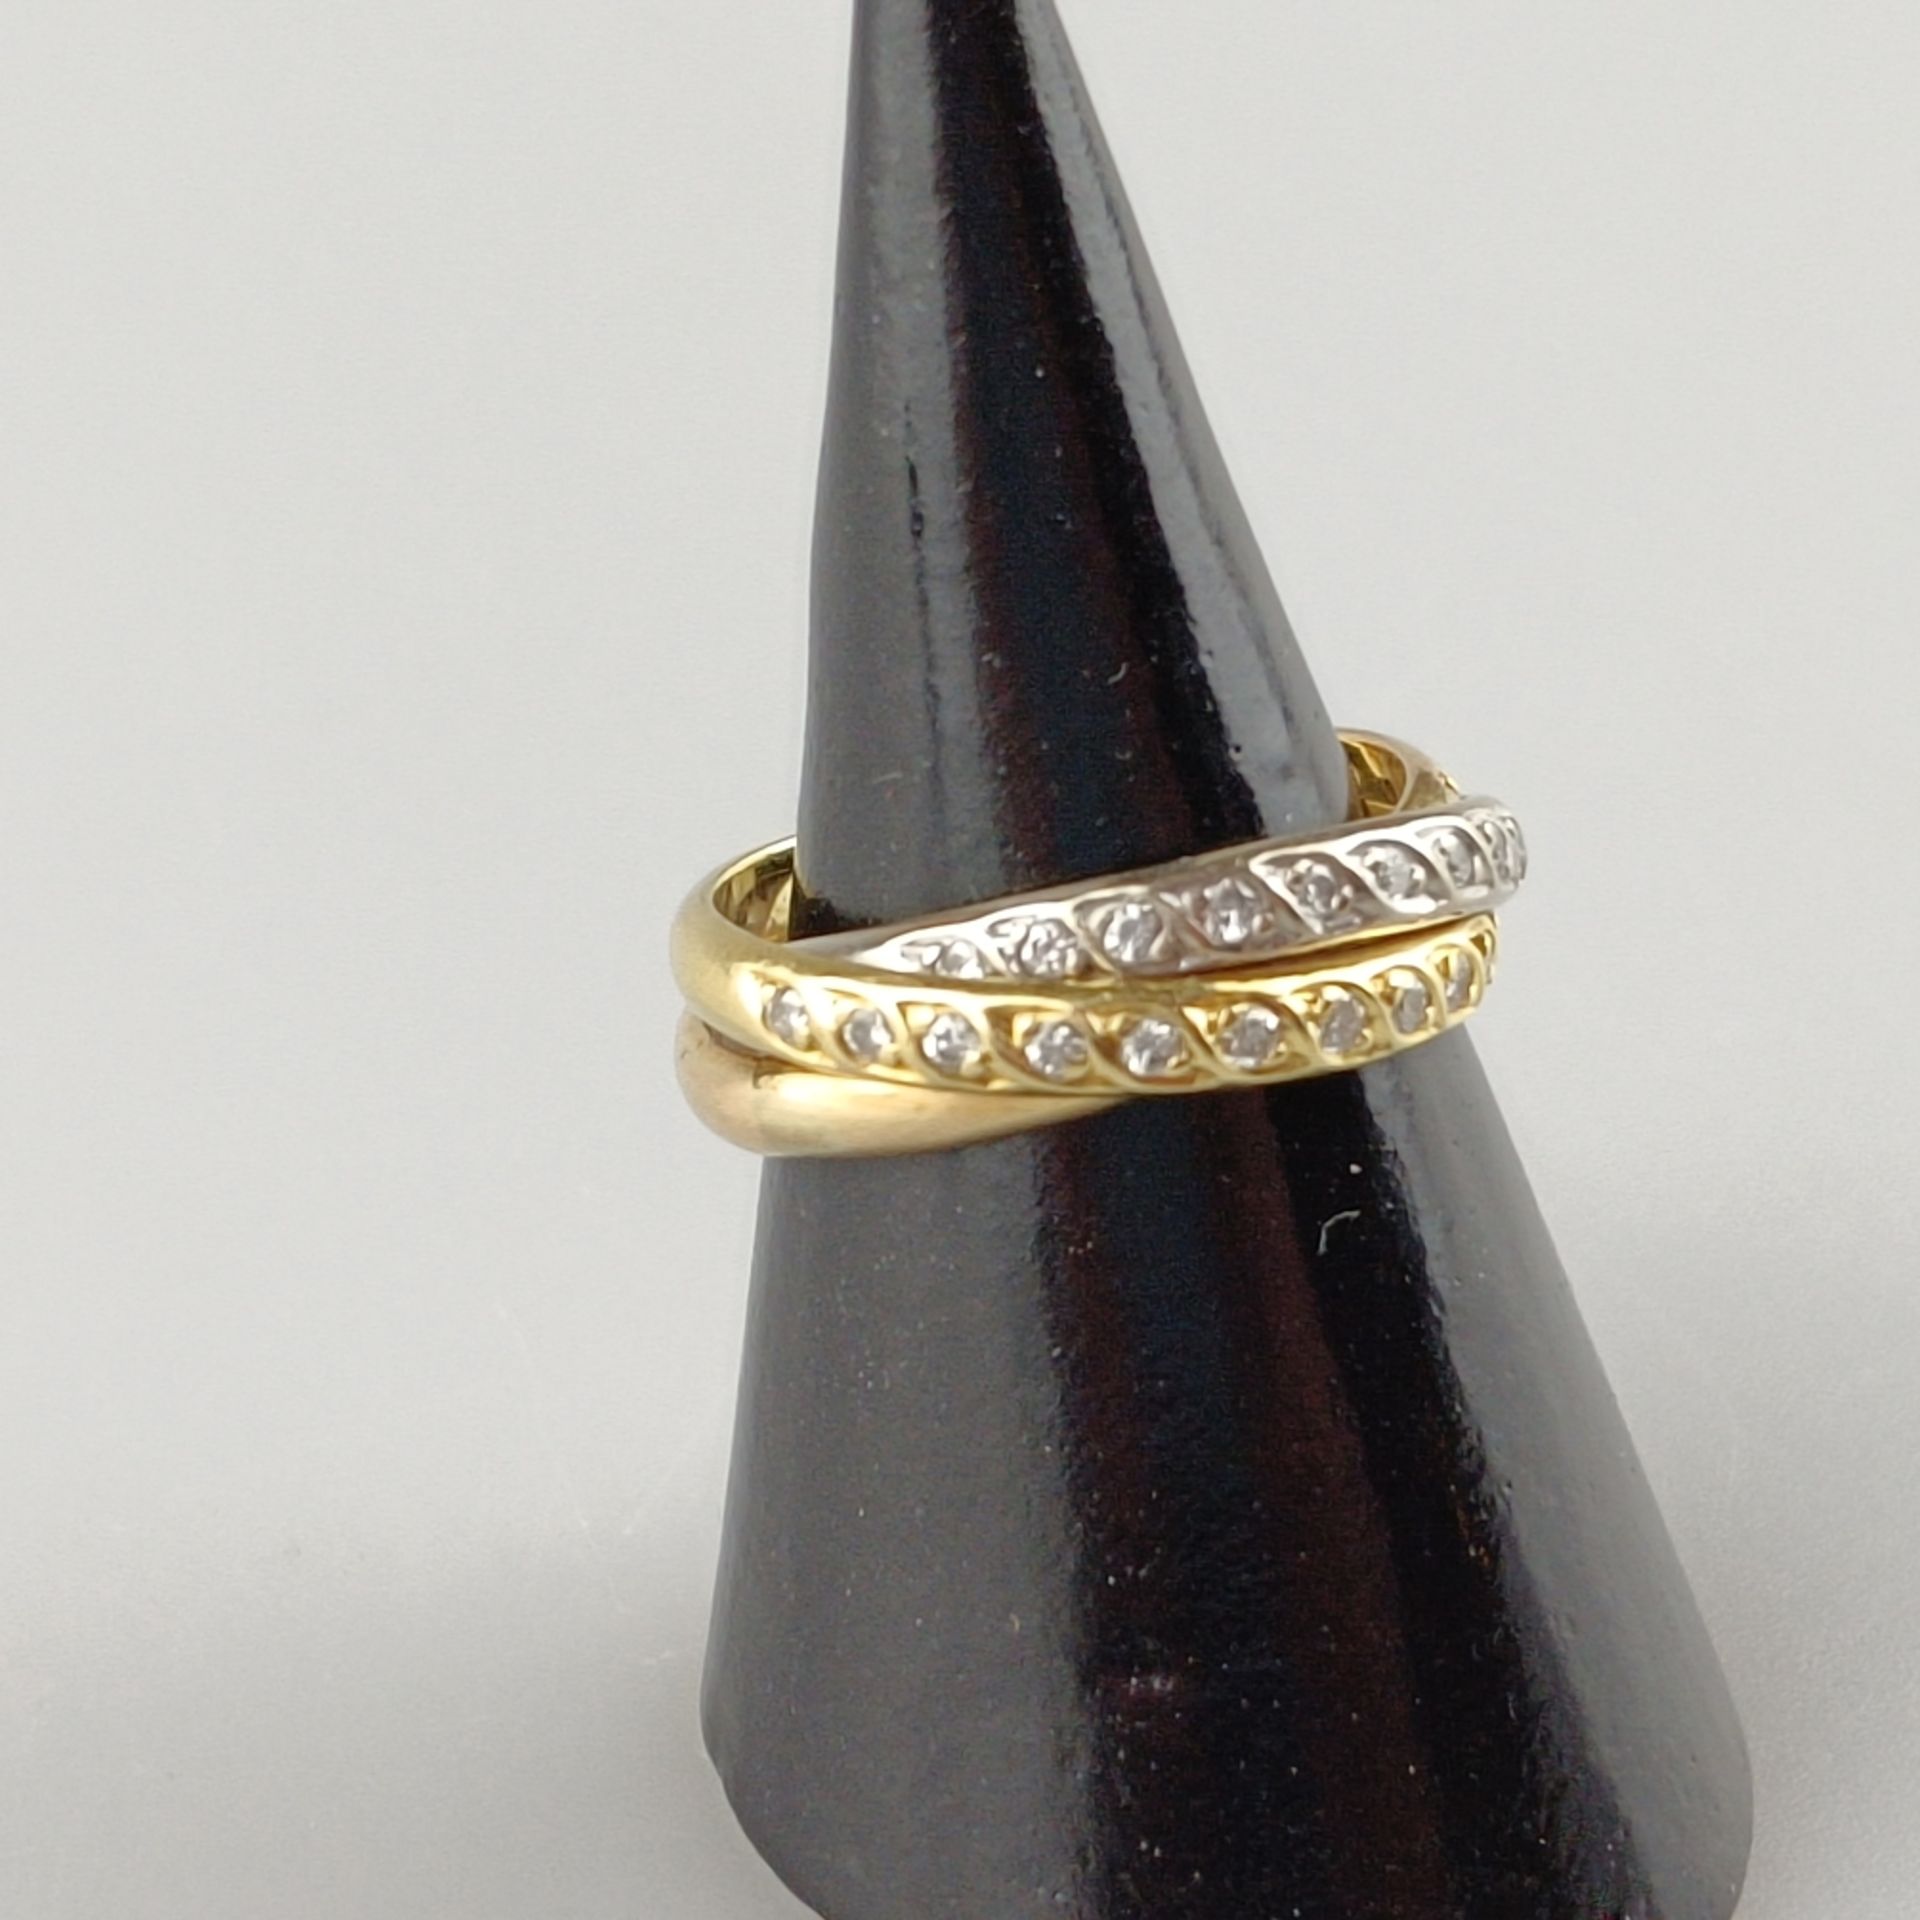 Trinity-Ring mit Diamanten - dreifarbig: Weiß-/Rosé-/Gelbgold 750/000 (18 K), gestempelt, ausgefass - Bild 2 aus 5